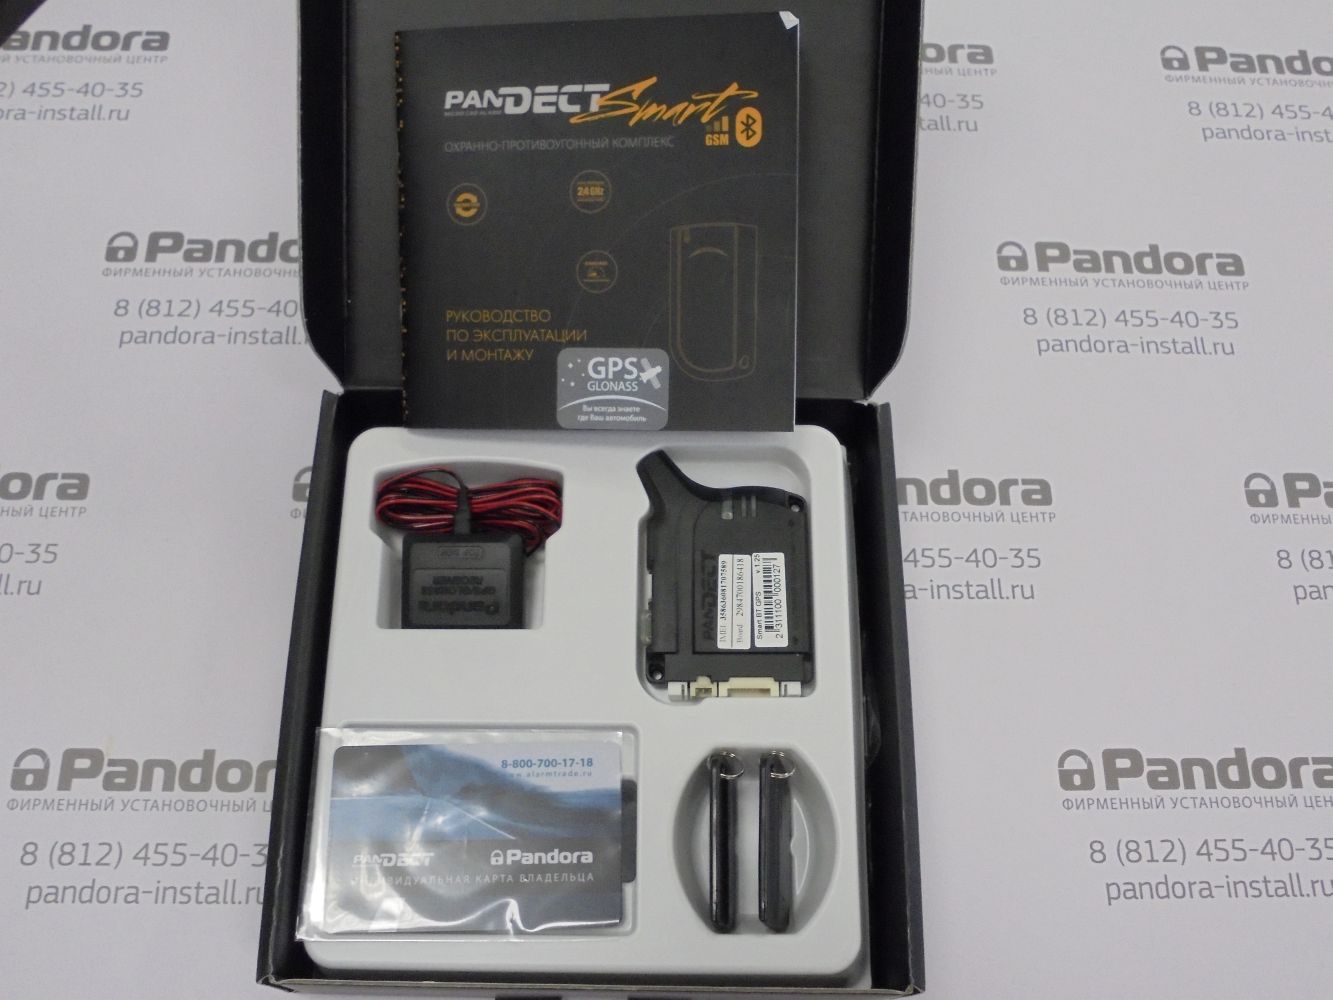 Метки и базовый блок автосигнализации Pandect Smart BT GPS